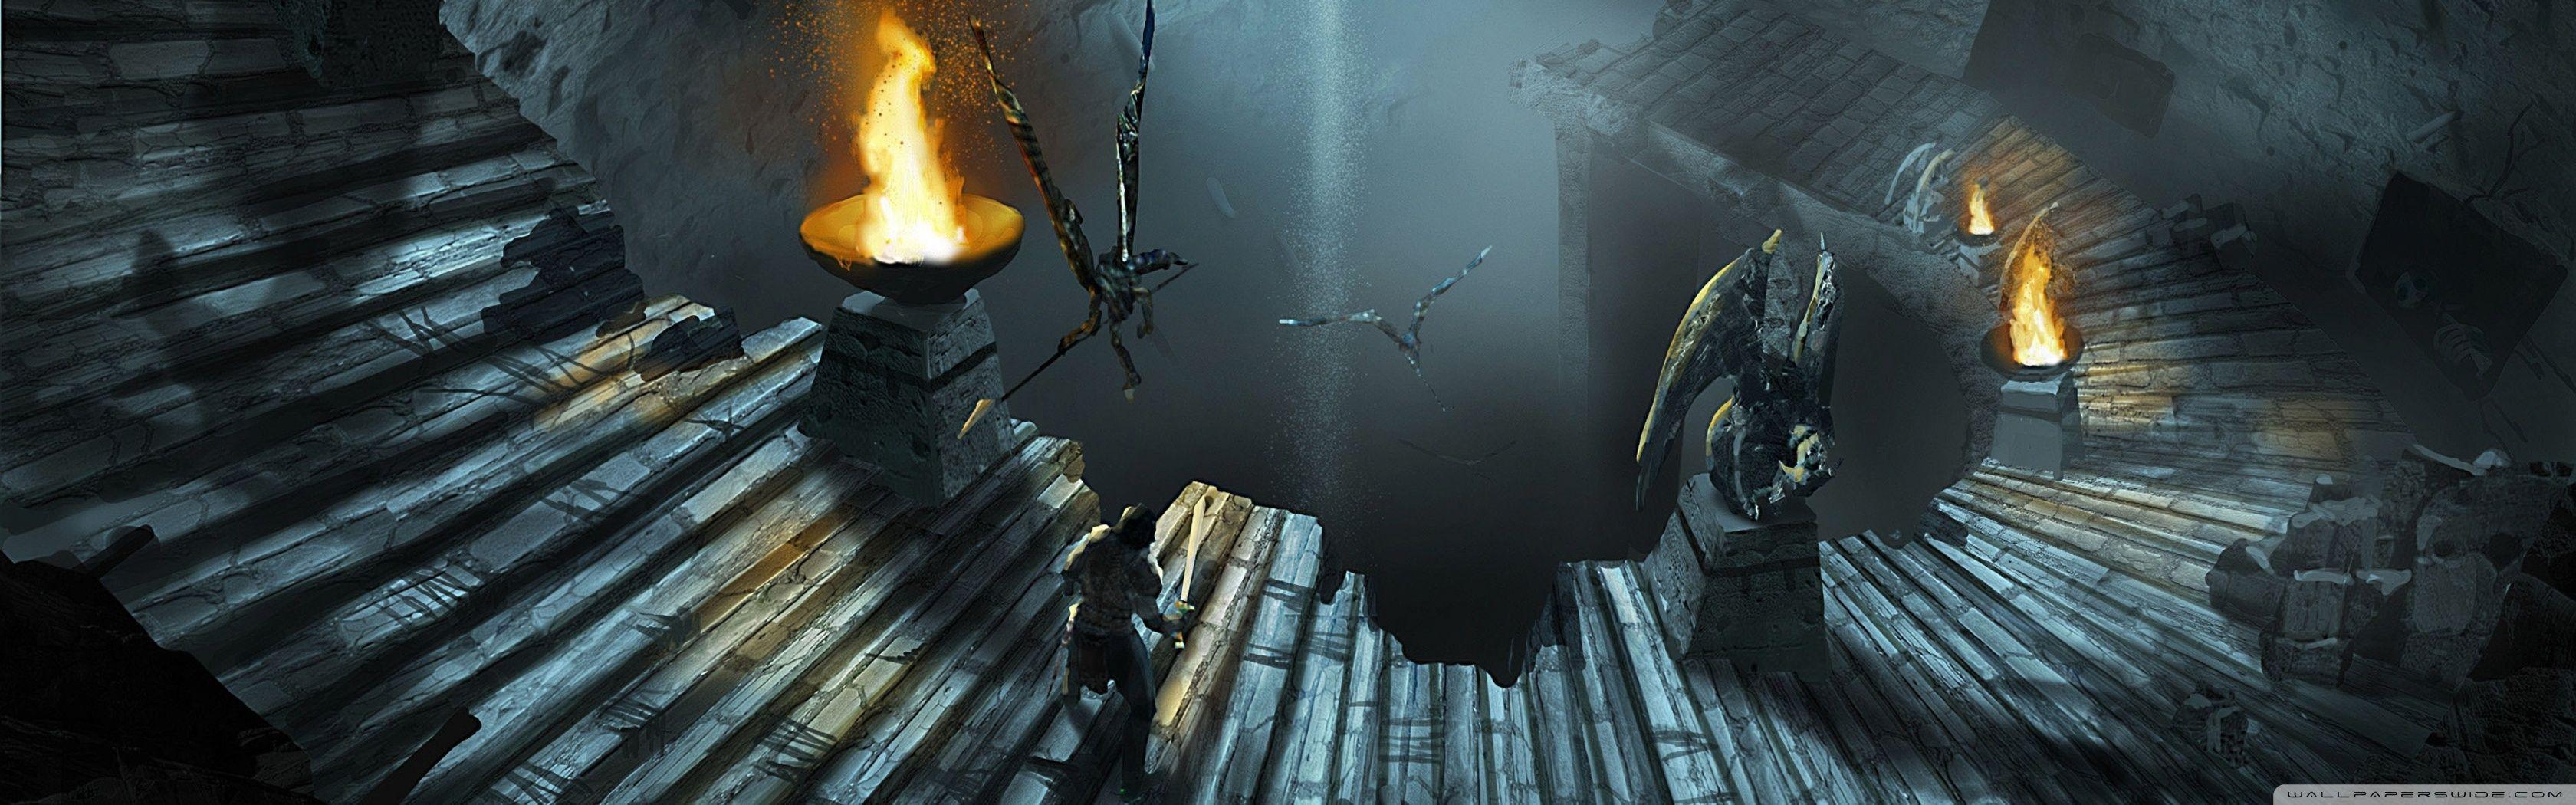 Dungeon Siege 3 HD desktop wallpapers : Widescreen : High